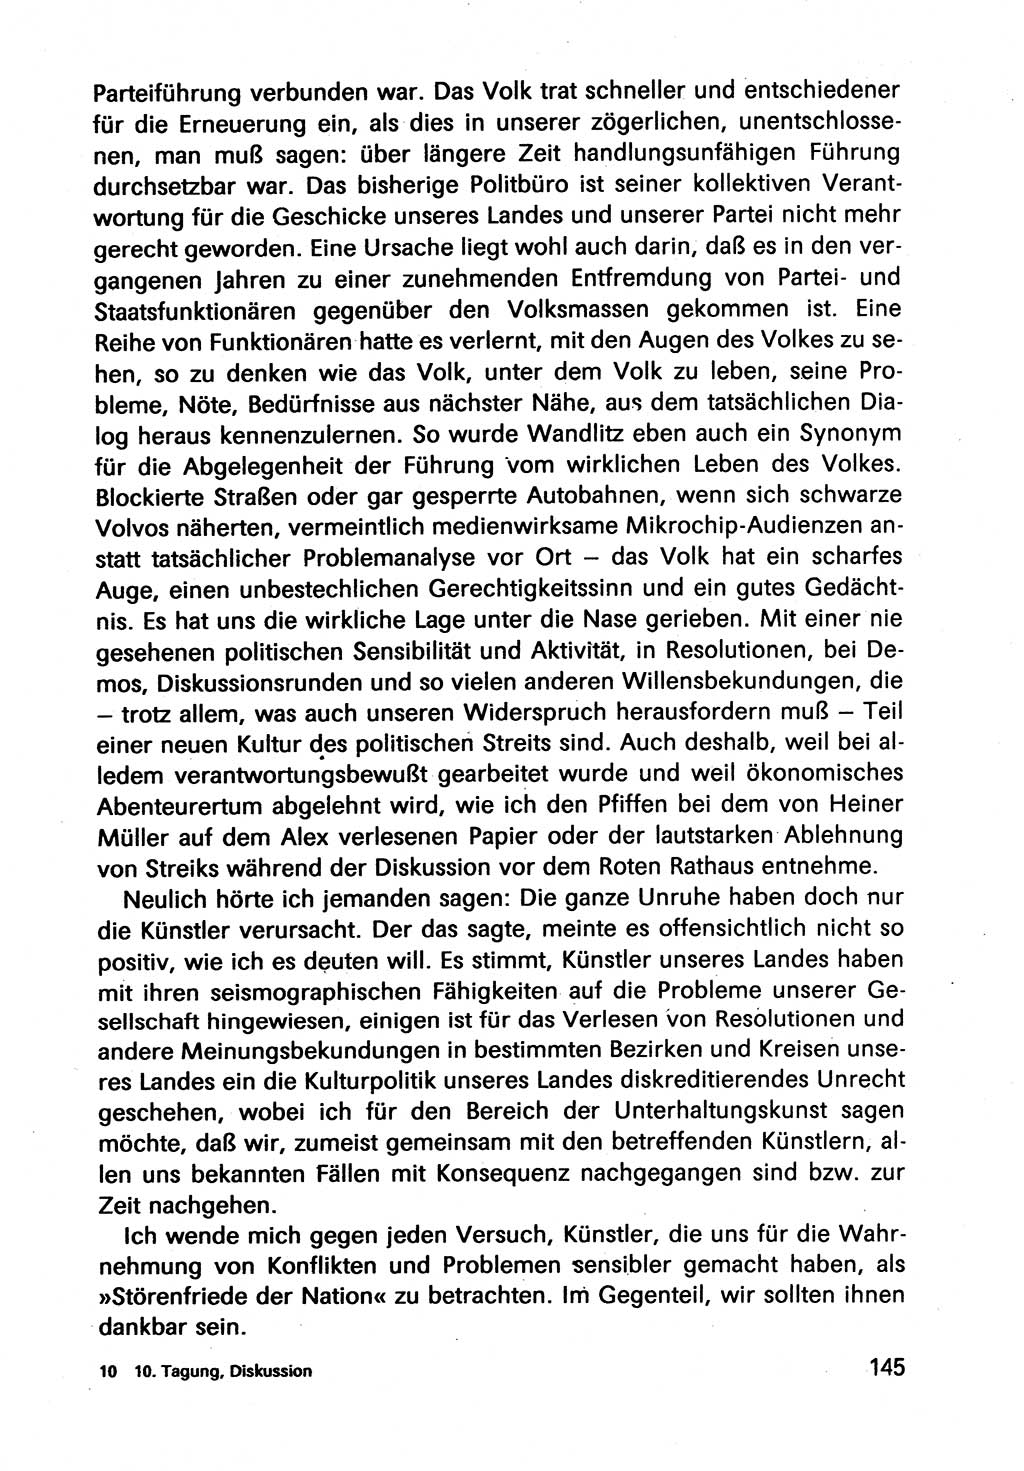 Diskussionsbeiträge, 10. Tagung des ZK (Zentralkomitee) der SED (Sozialistische Einheitspartei Deutschlands) [Deutsche Demokratische Republik (DDR)] 1989, Seite 145 (Disk.-Beitr. 10. Tg. ZK SED DDR 1989, S. 145)